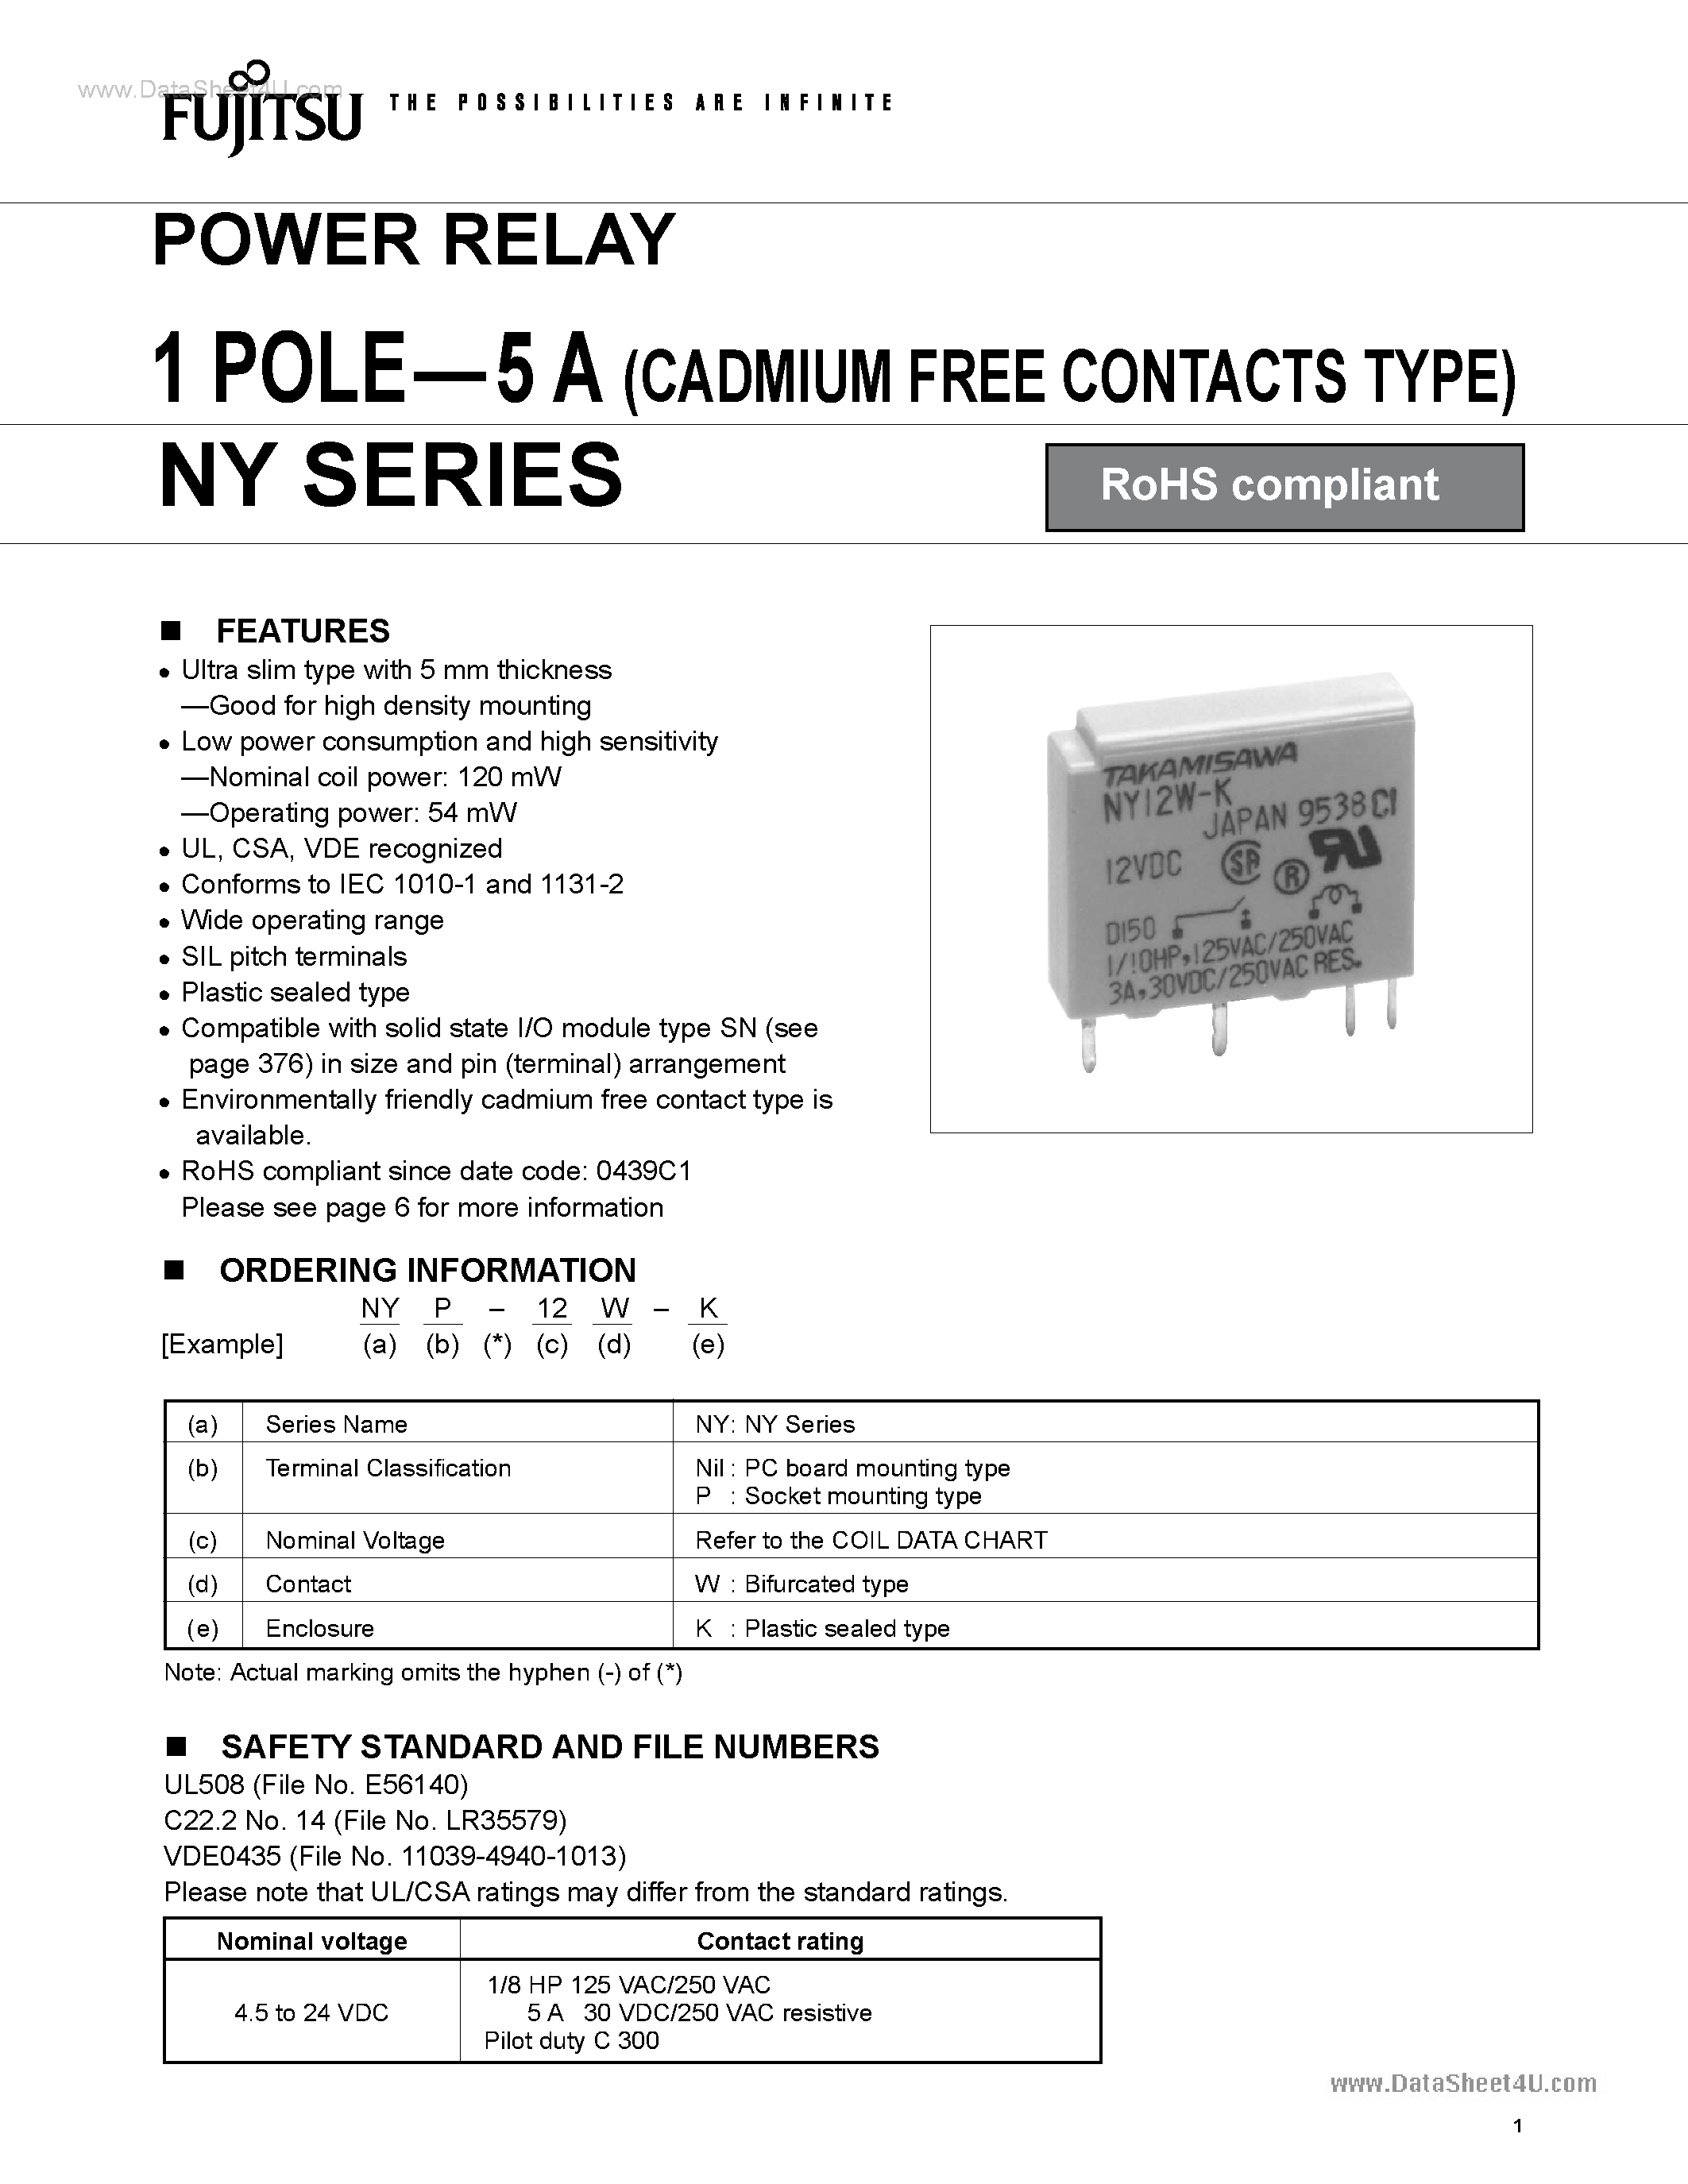 Datasheet NY-12W-K - (NY Series) Power Relay page 1